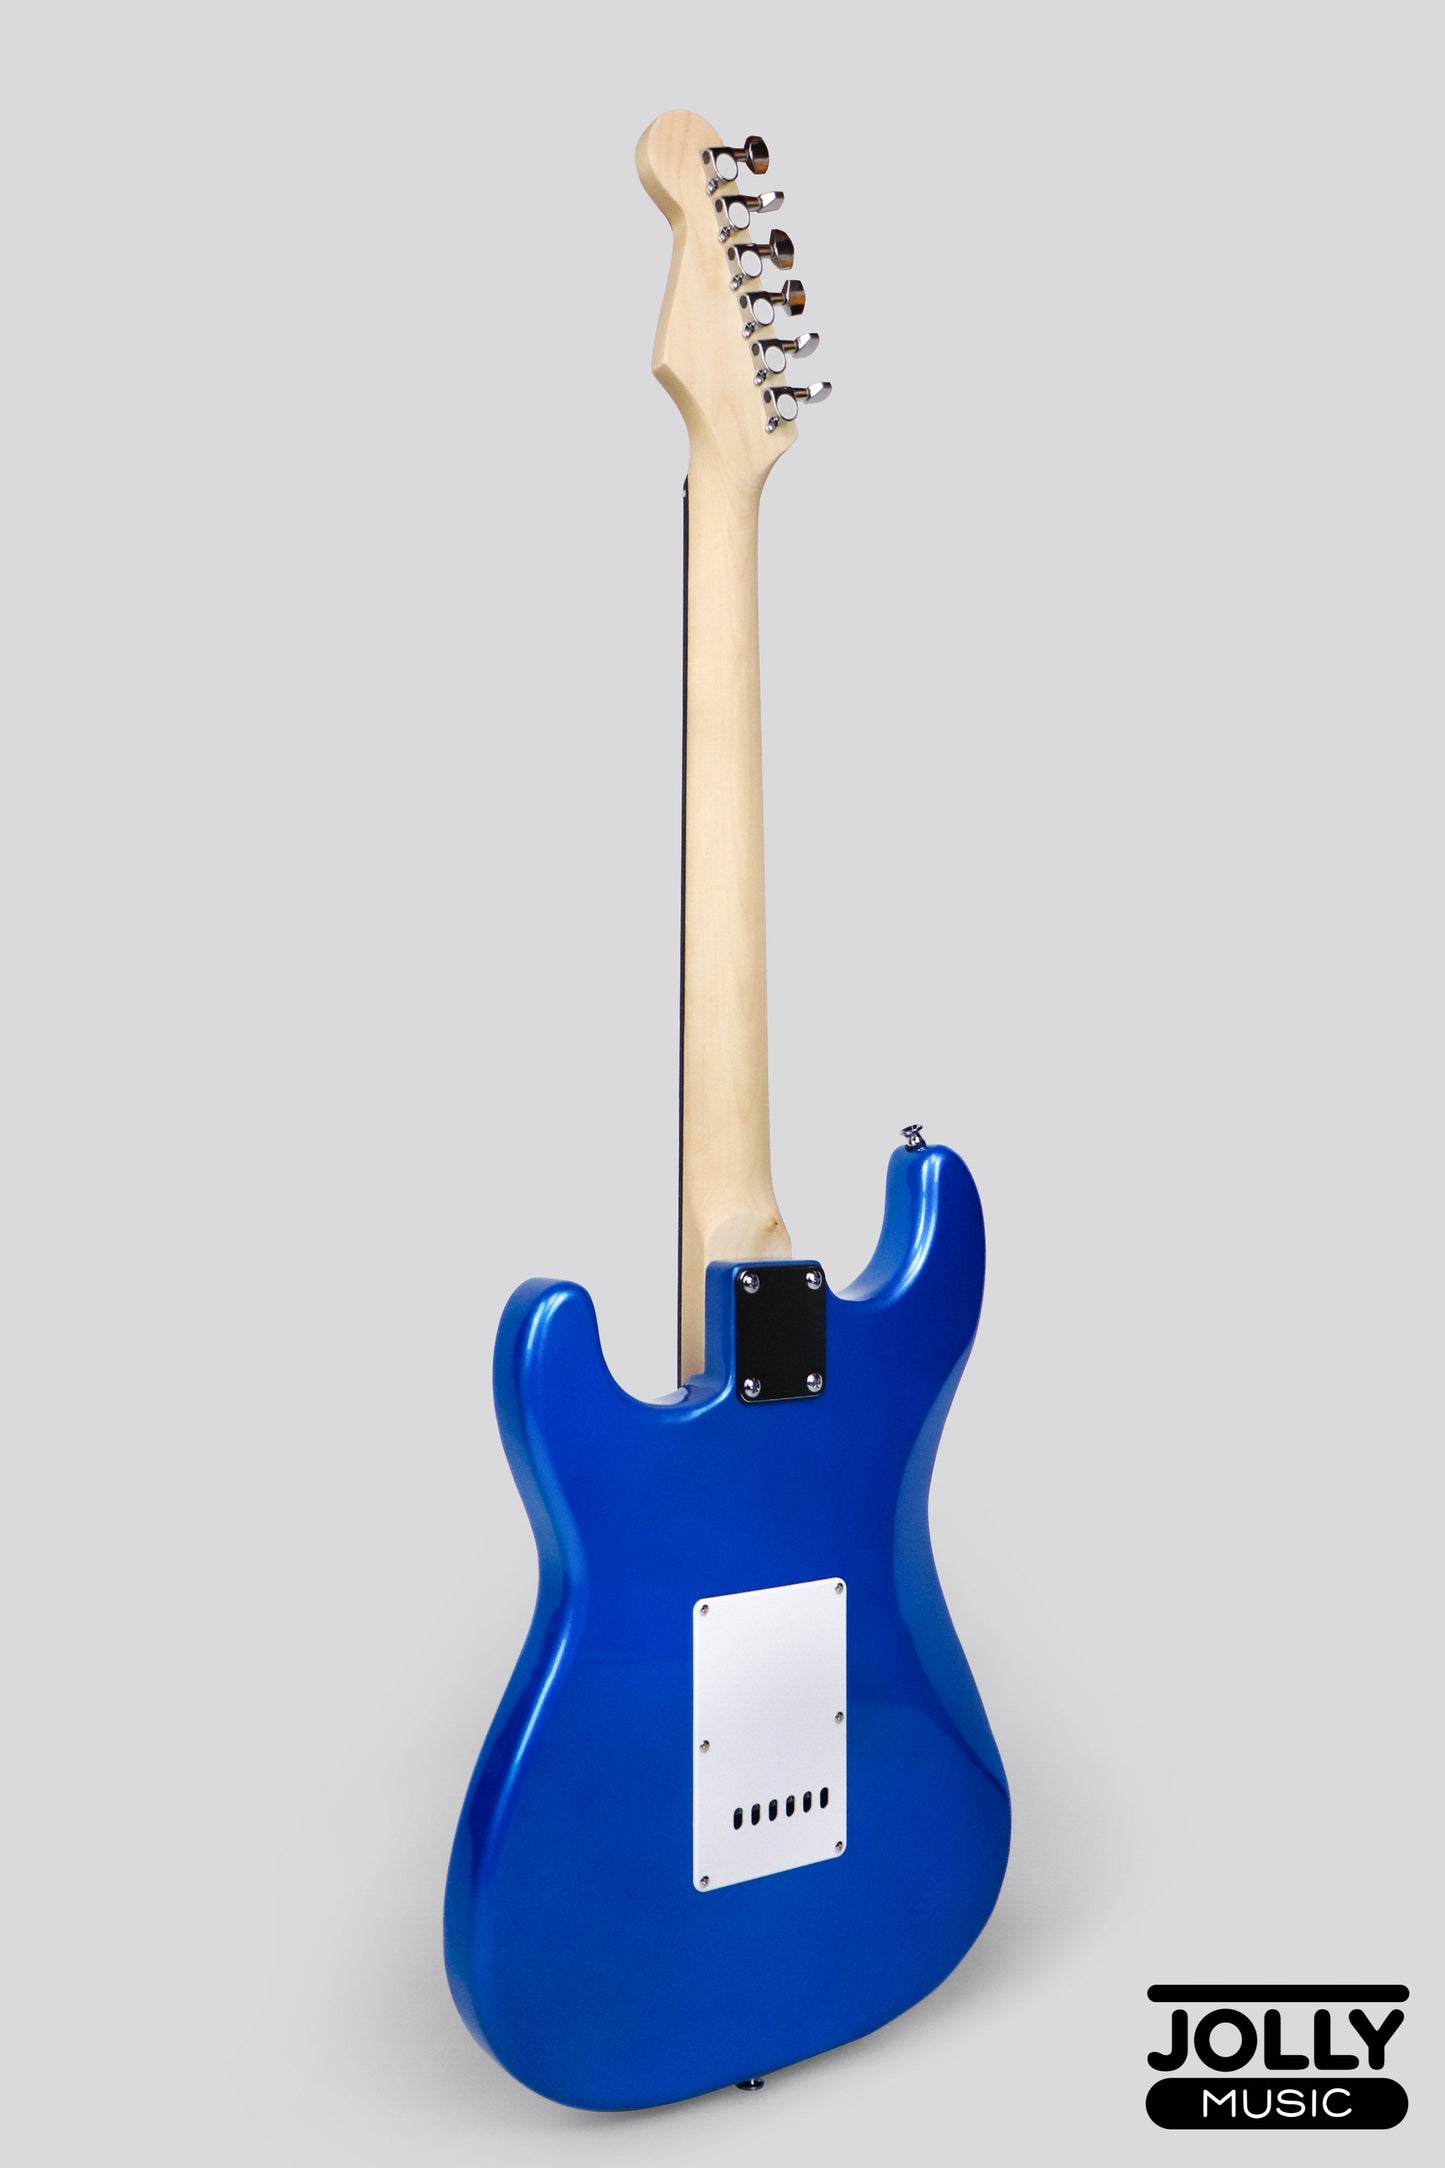 Deviser S-Style L-G1 Electric Guitar - Blue